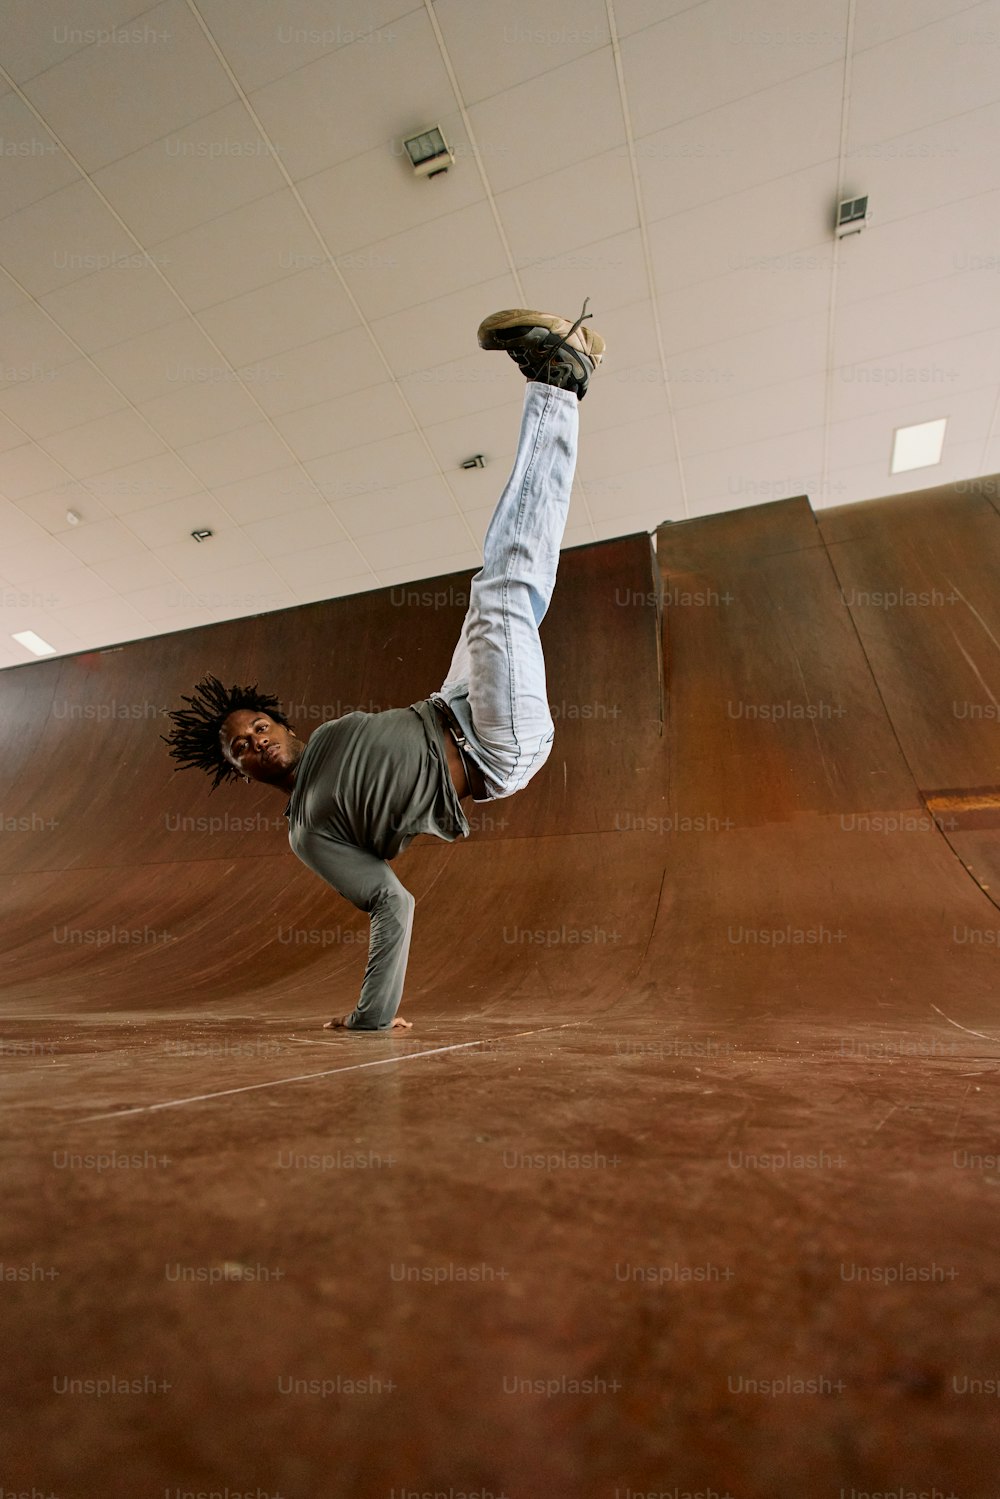 um homem fazendo um truque em um skate em uma pista de skate